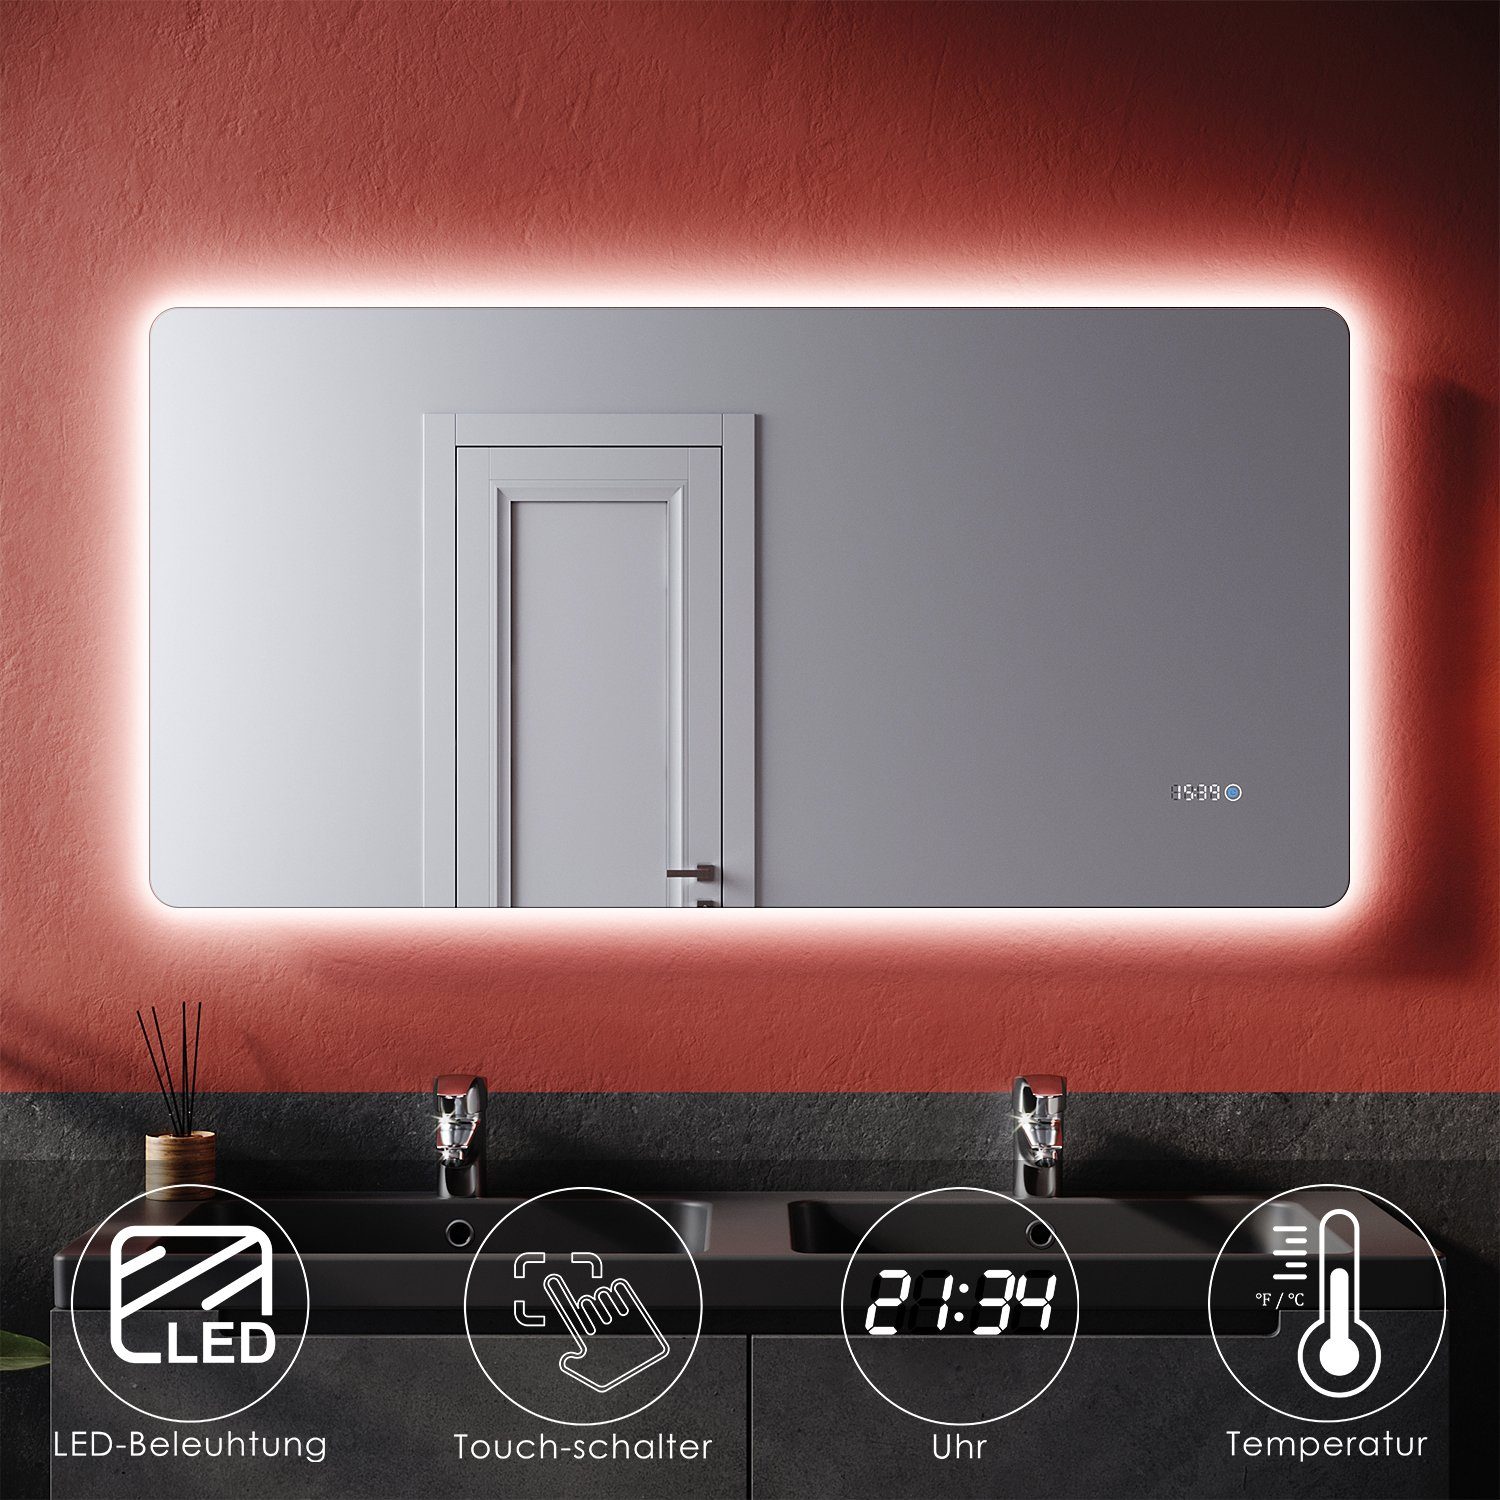 SONNI Badspiegel »Badspiegel mit LED-Beleuchtung 120×60 cm beschlagfrei  Dimmbar, Lichtfarbe einstellbar mit LED Uhr Temperaturanzeige Wandspiegel  Touch-Schalter« online kaufen | OTTO